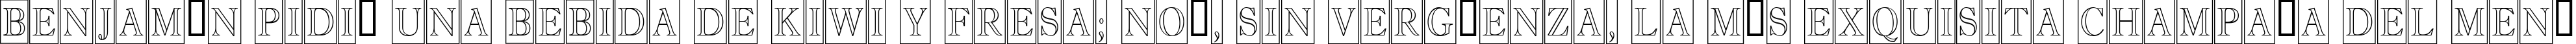 Пример написания шрифтом a_AntiqueTitulTrCmOtl текста на испанском